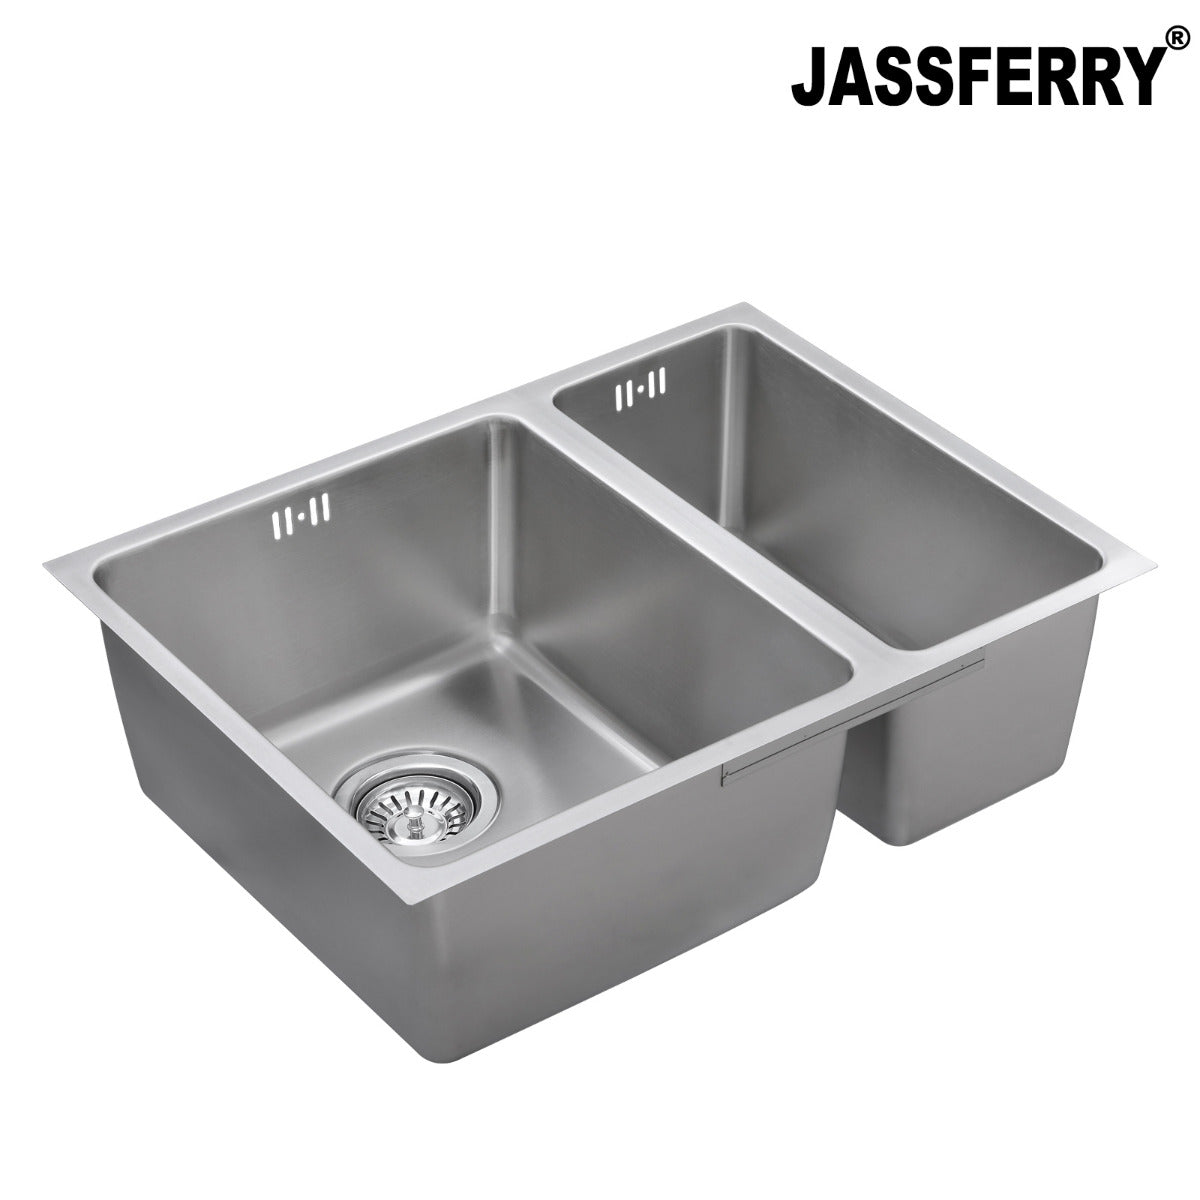 JassferryJASSFERRY Undermount Stainless Steel Kitchen Sink 1.5 Bowl Righthand Half BowlKitchen Sinks